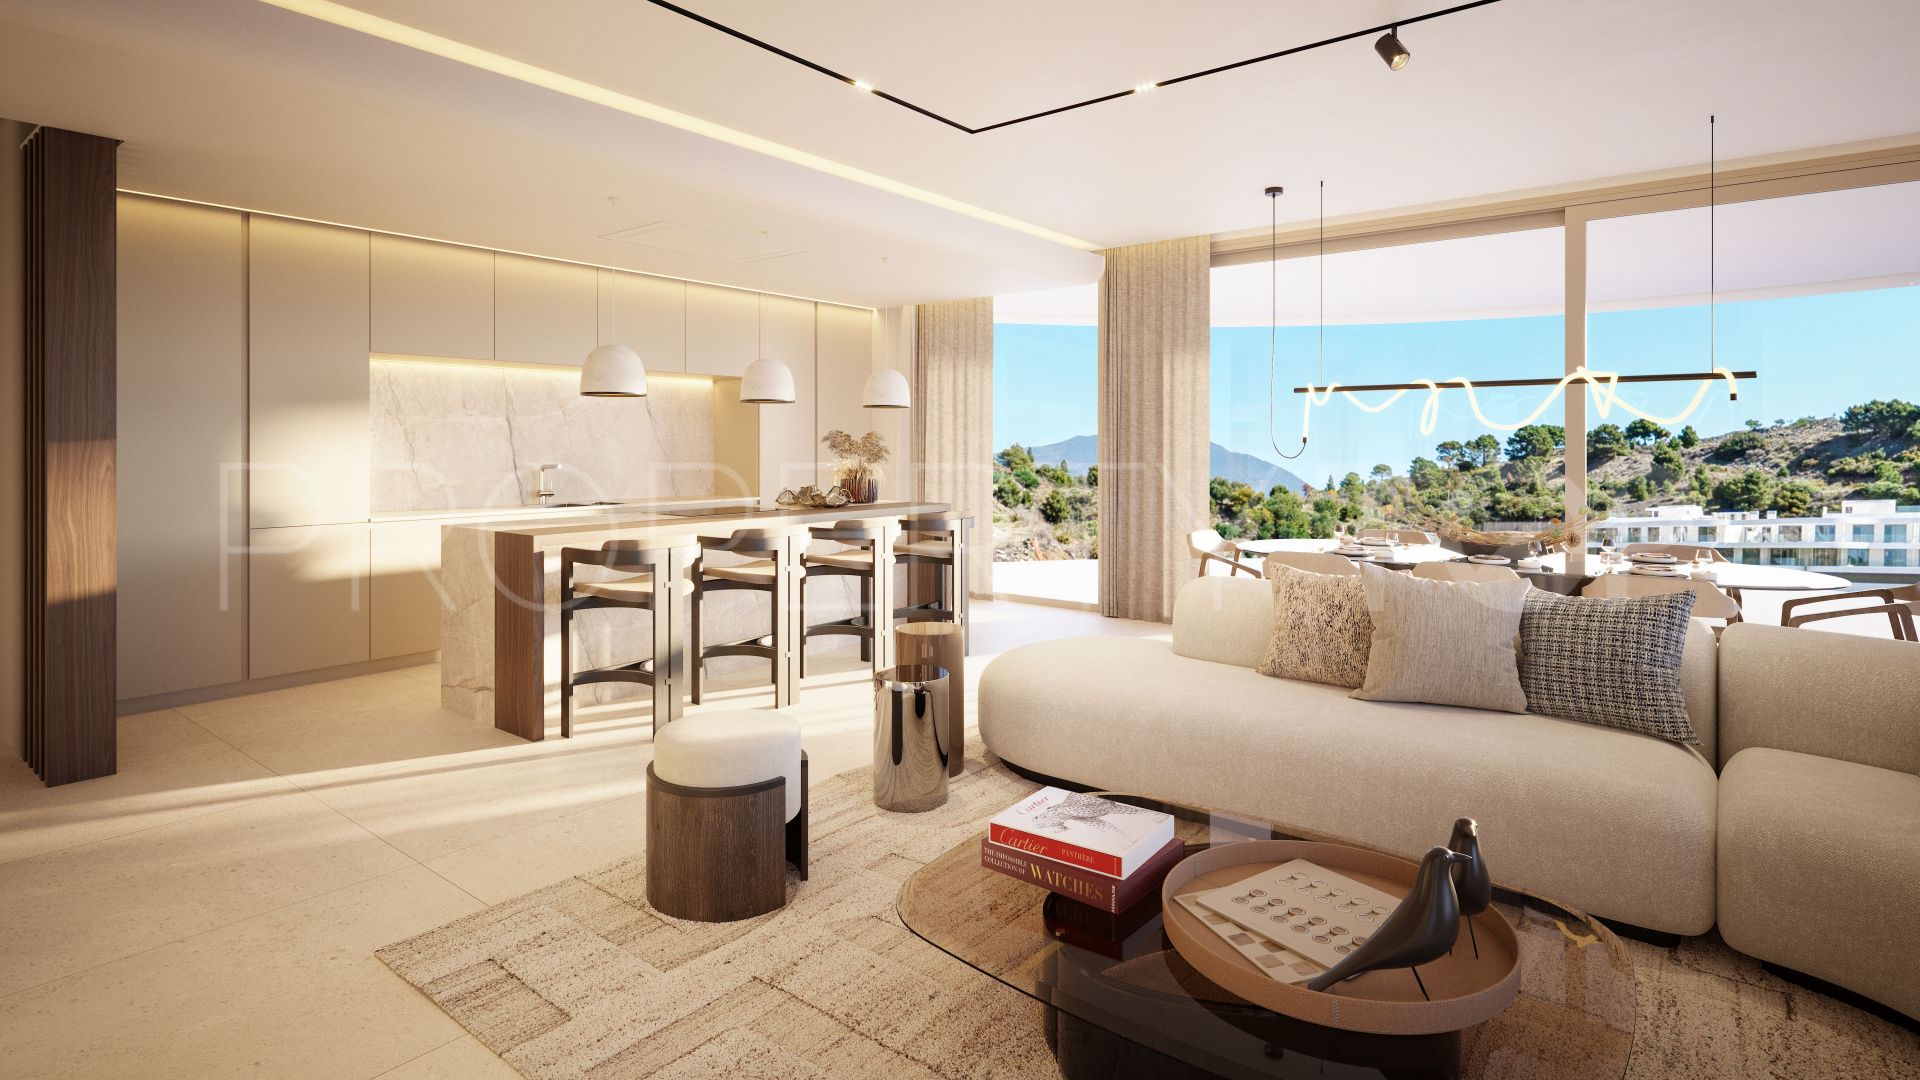 The View Marbella, apartamento en venta de 2 dormitorios